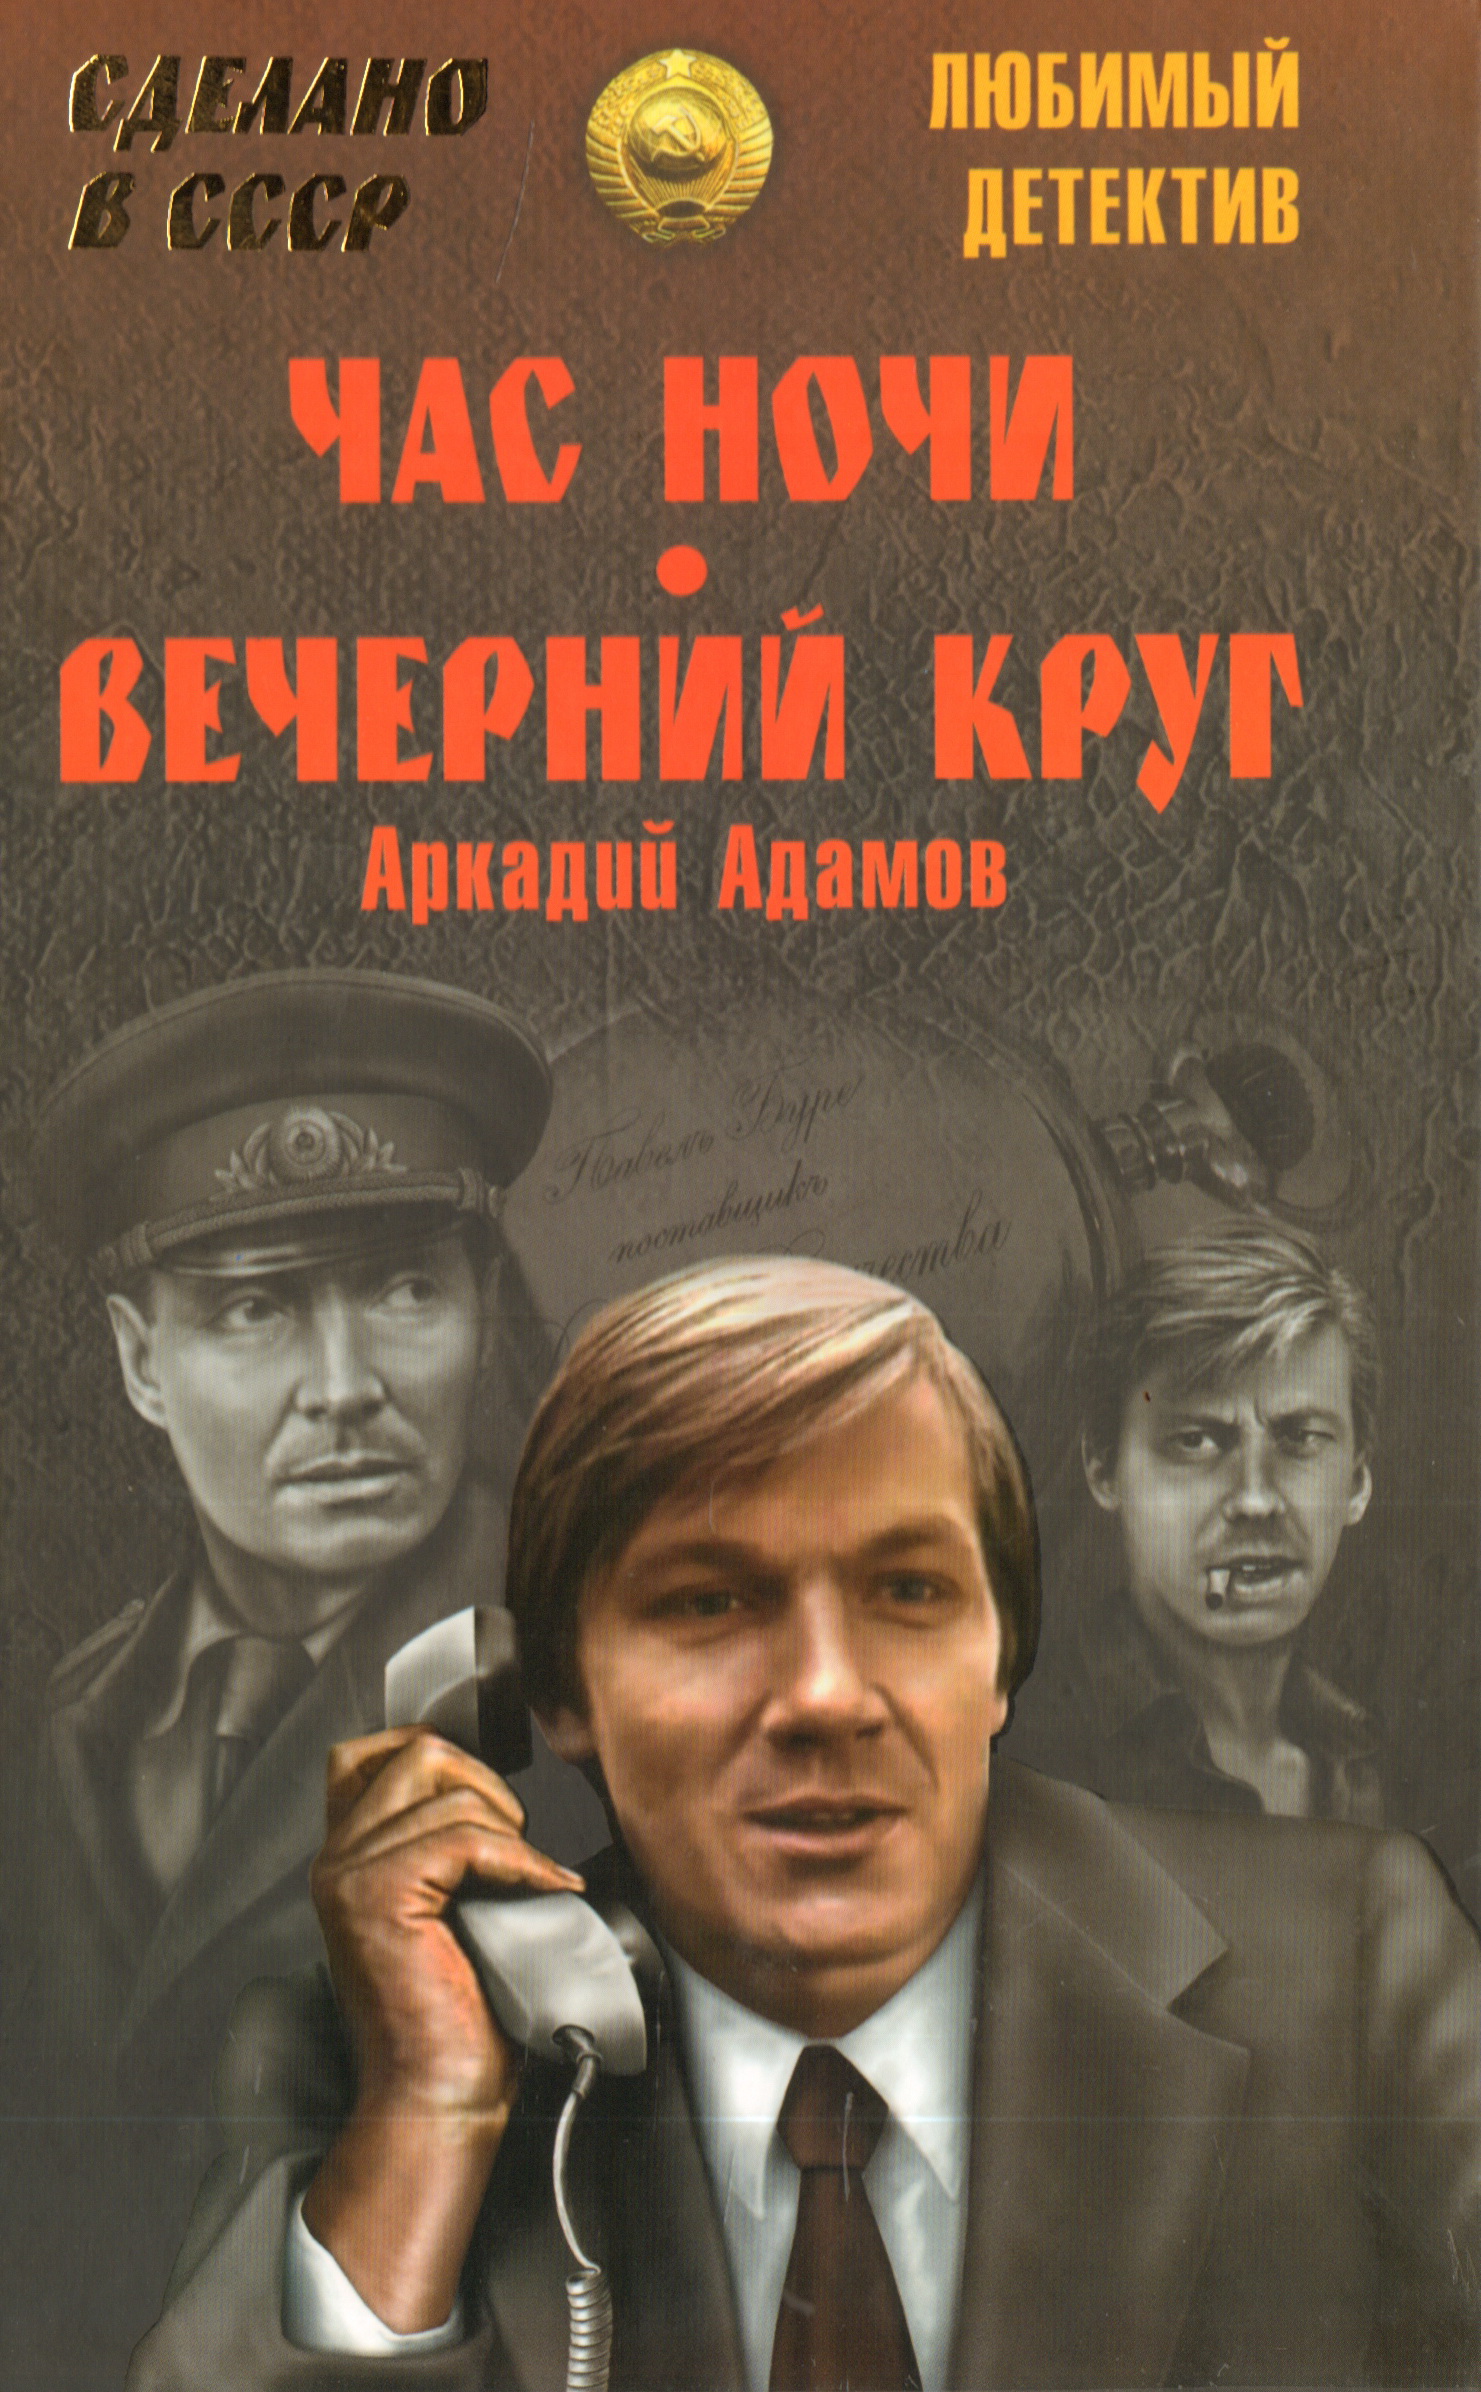 Любимого отечественного писателя. Советские детективы. Советские детективы книги.